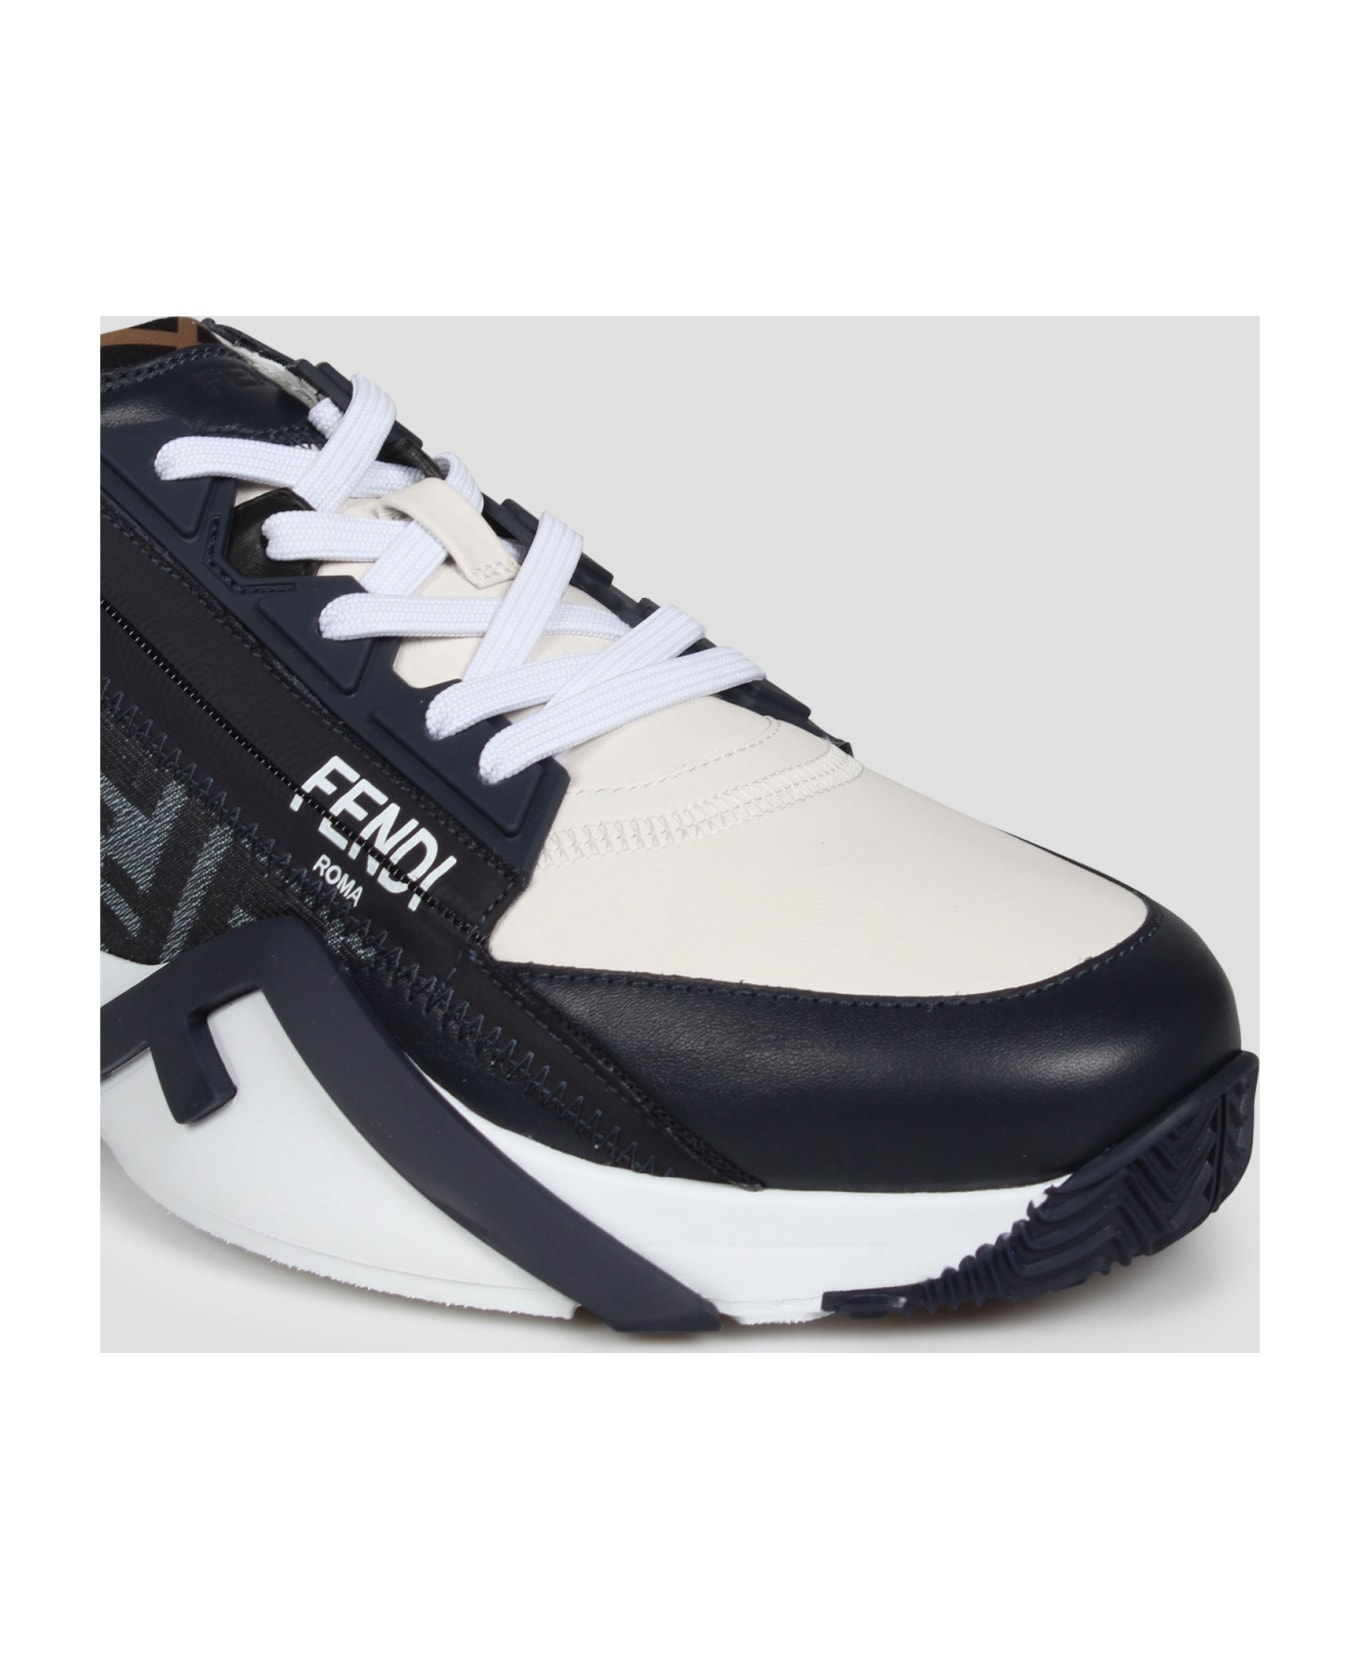 Fendi Flow Sneakers - Black スニーカー